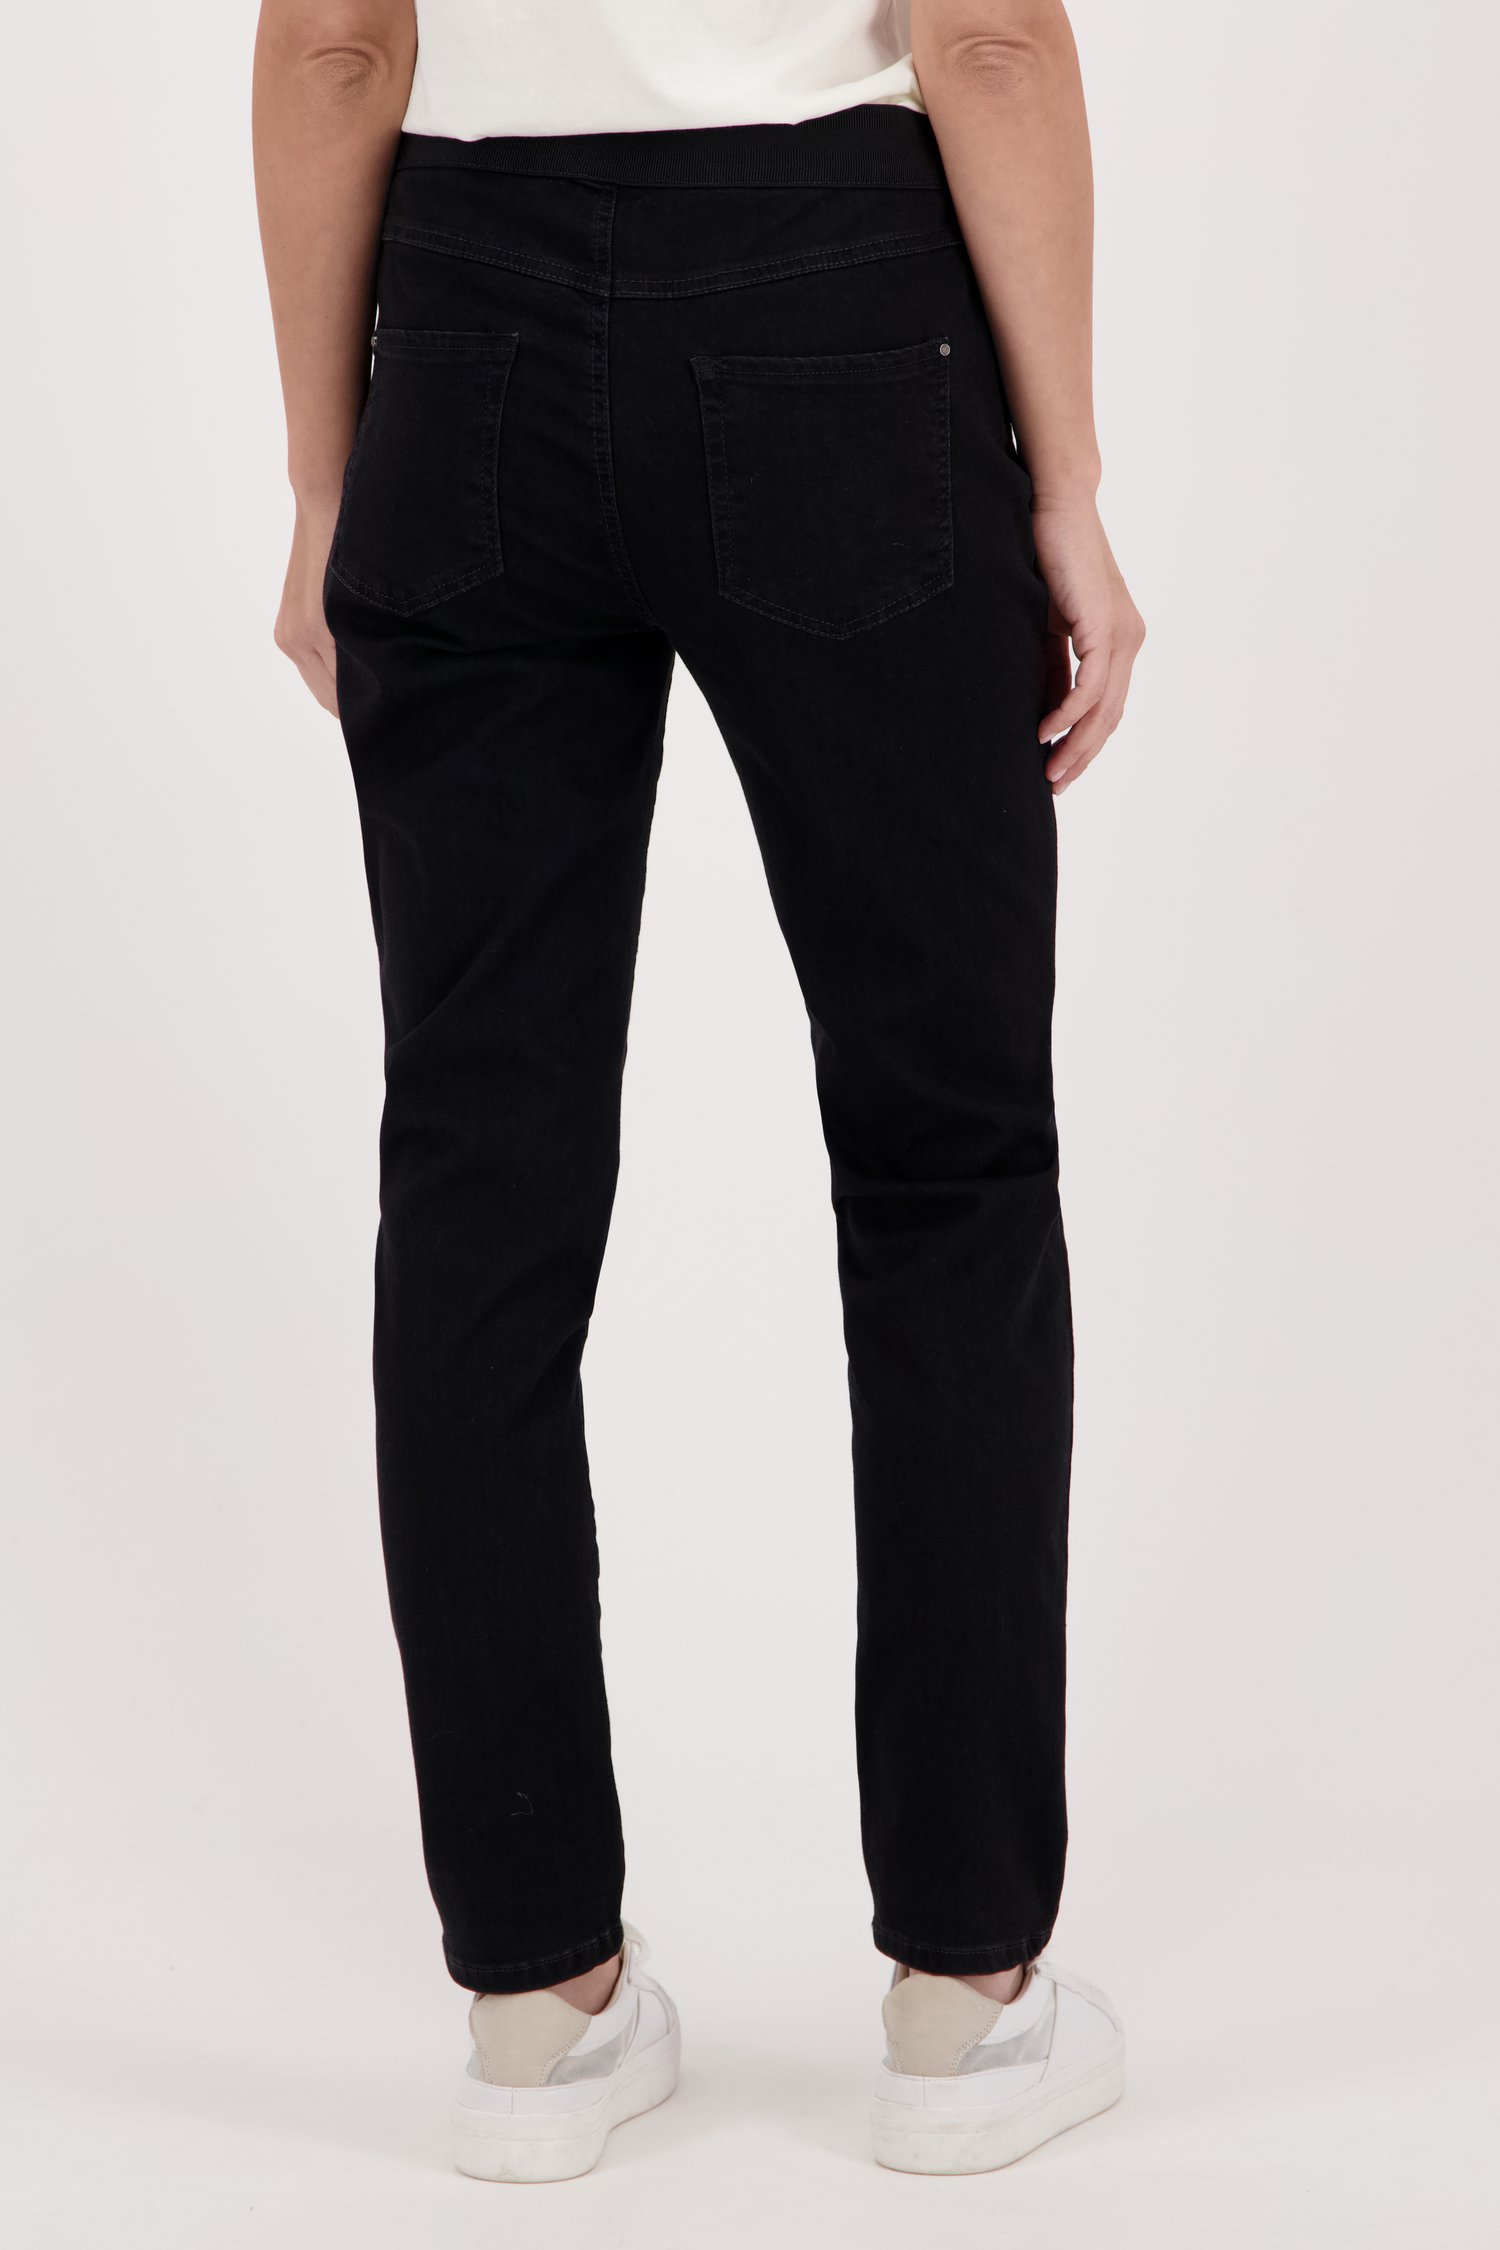 Zwarte jeans met elastische taille - slim fit van Anna Montana voor Dames